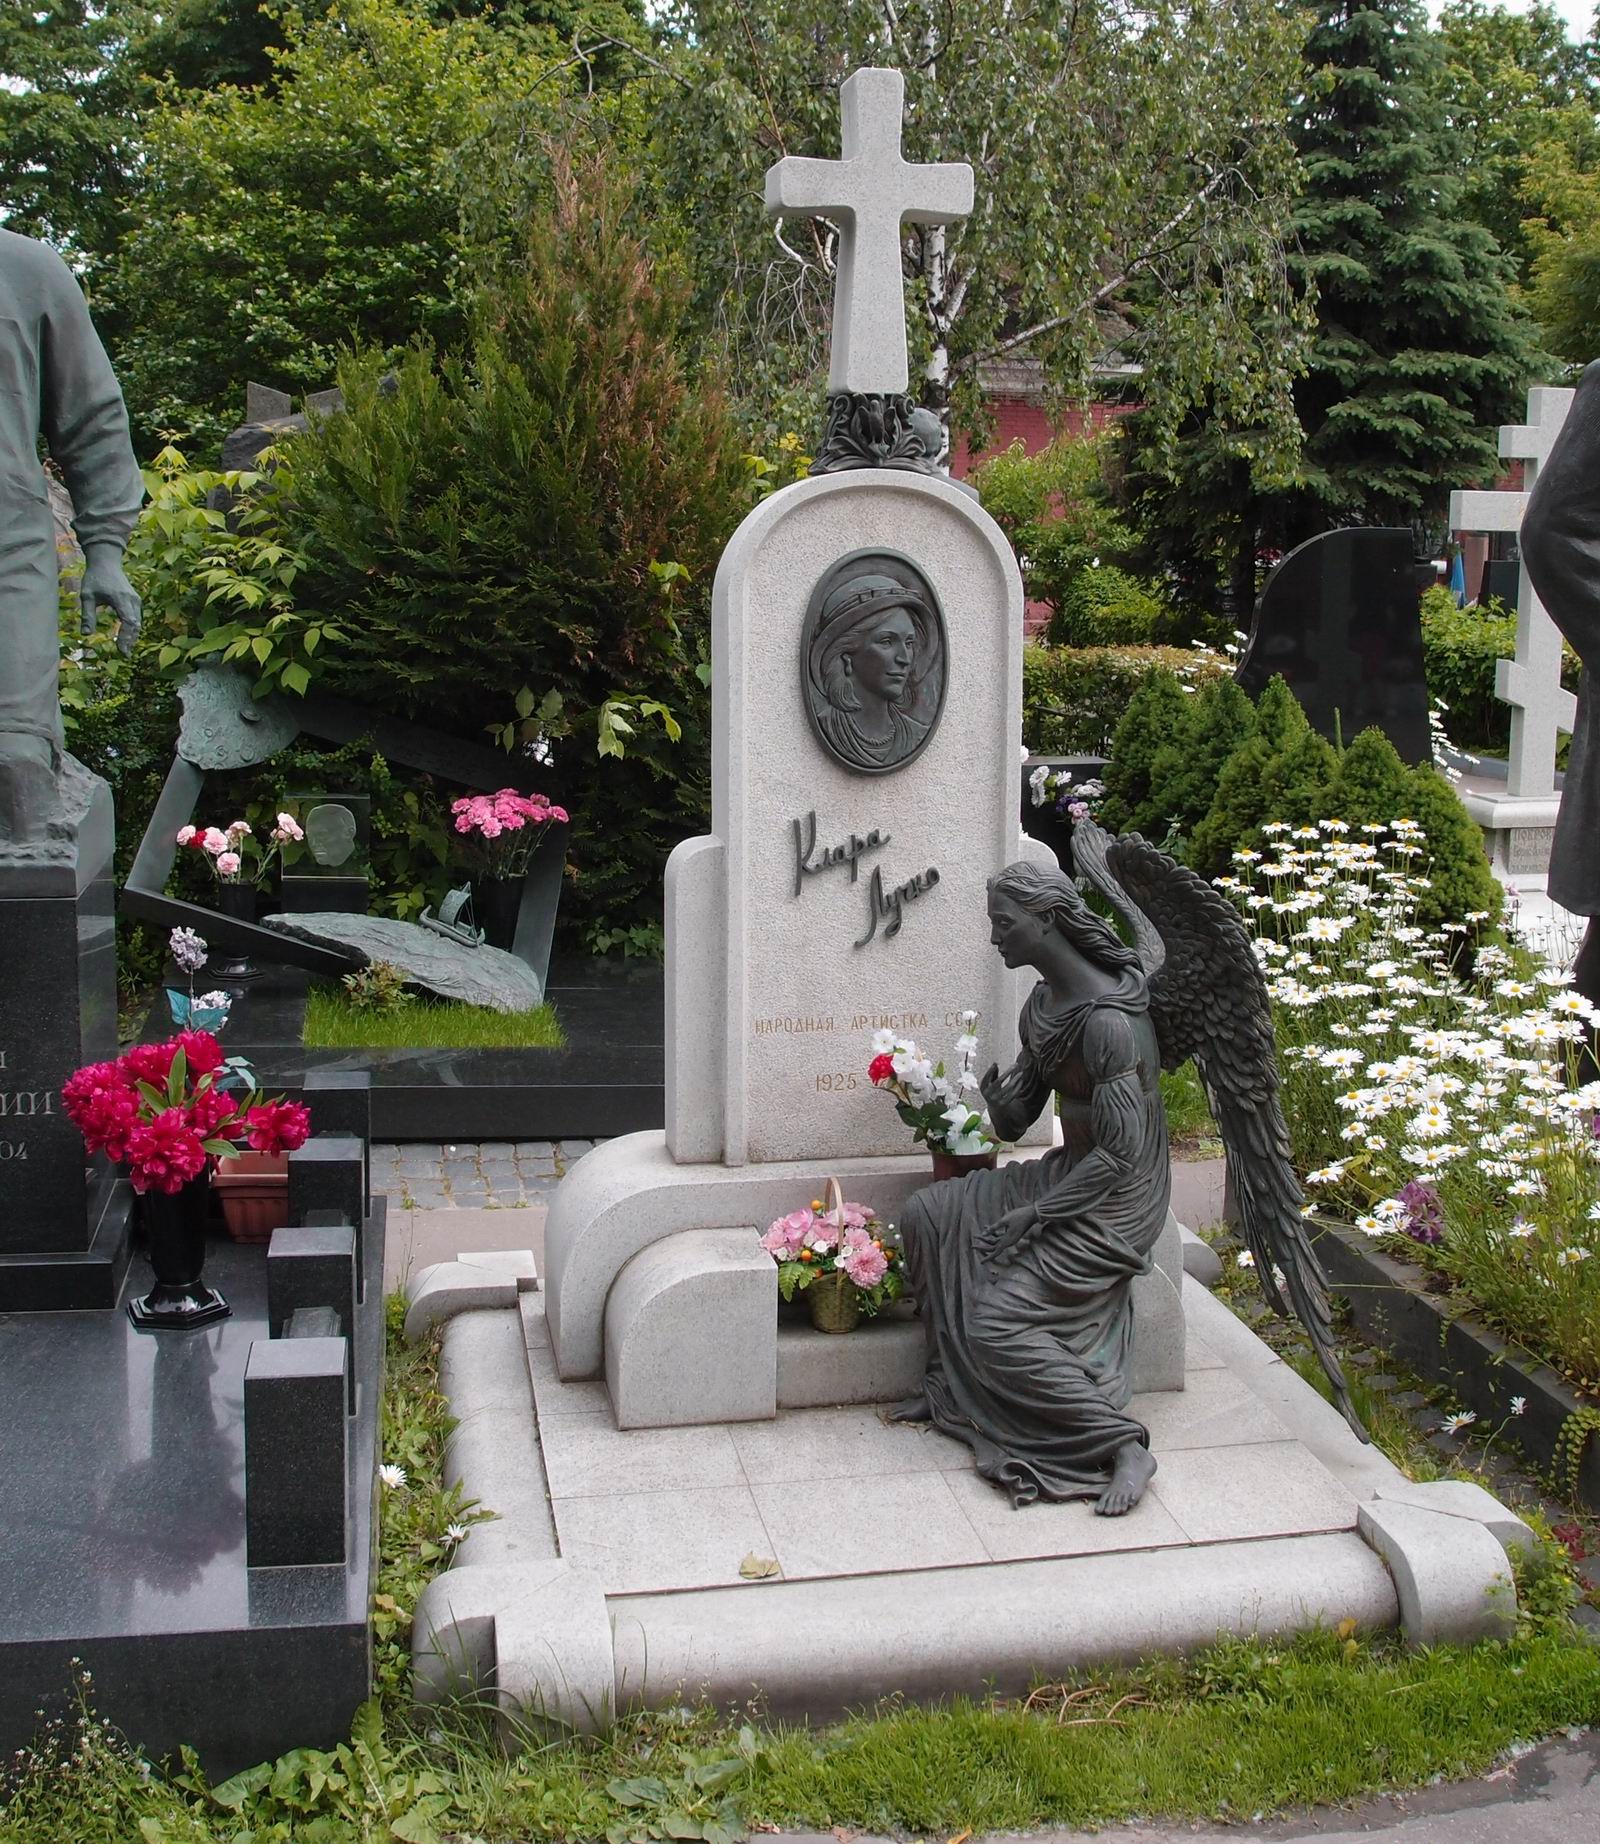 Памятник на могиле Лучко К.С. (1925-2005), ск. Д.Успенская, В.Шанов, на Новодевичьем кладбище (10-9-13). Нажмите левую кнопку мыши чтобы увидеть фрагмент памятника.